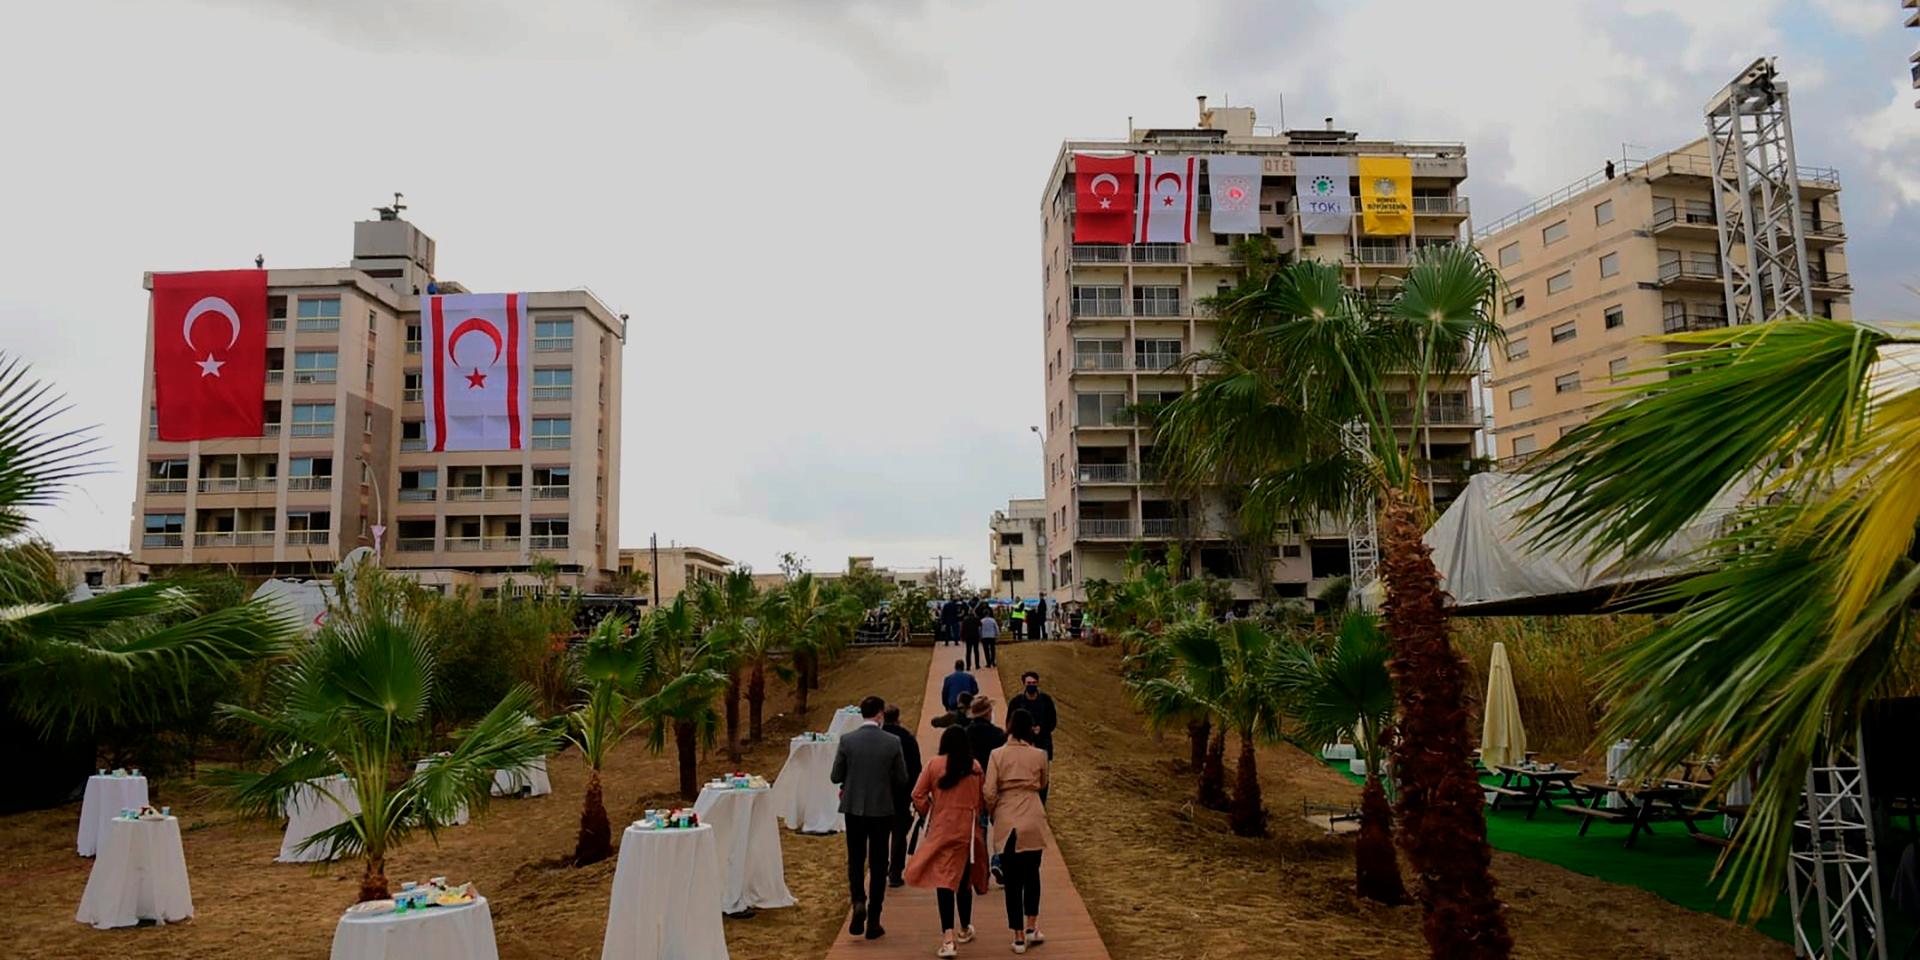 Folk promenerar förbi övergivna byggnader med turkiska och turkcypriotiska flaggor inför den turkiske presidenten Recep Tayyip Erdogans besök vid det nyöppnade strandområdet i den omstridda stadsdelen Varosha.